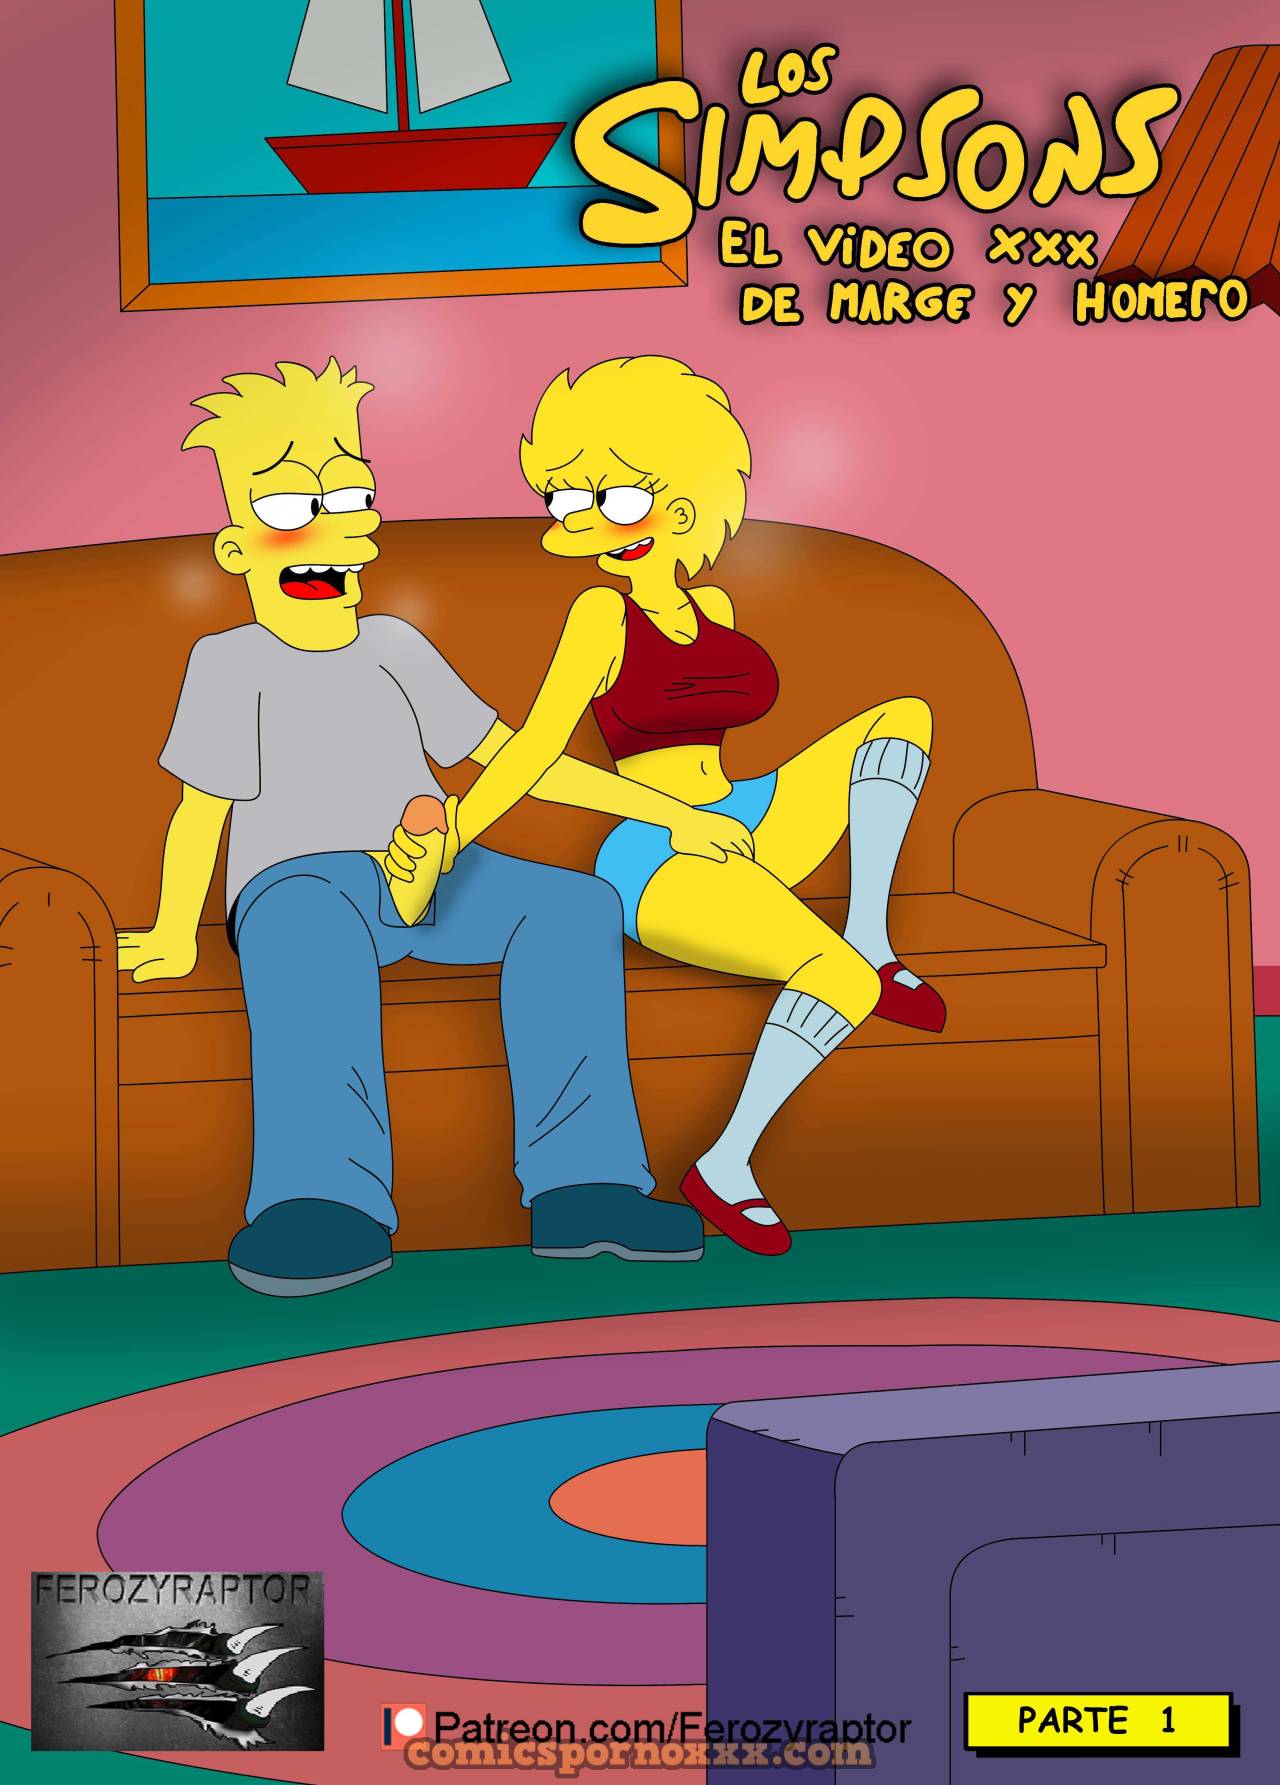 El Video Porno de Marge y Homero Simpson - 1 - Comics Porno - Hentai Manga - Cartoon XXX